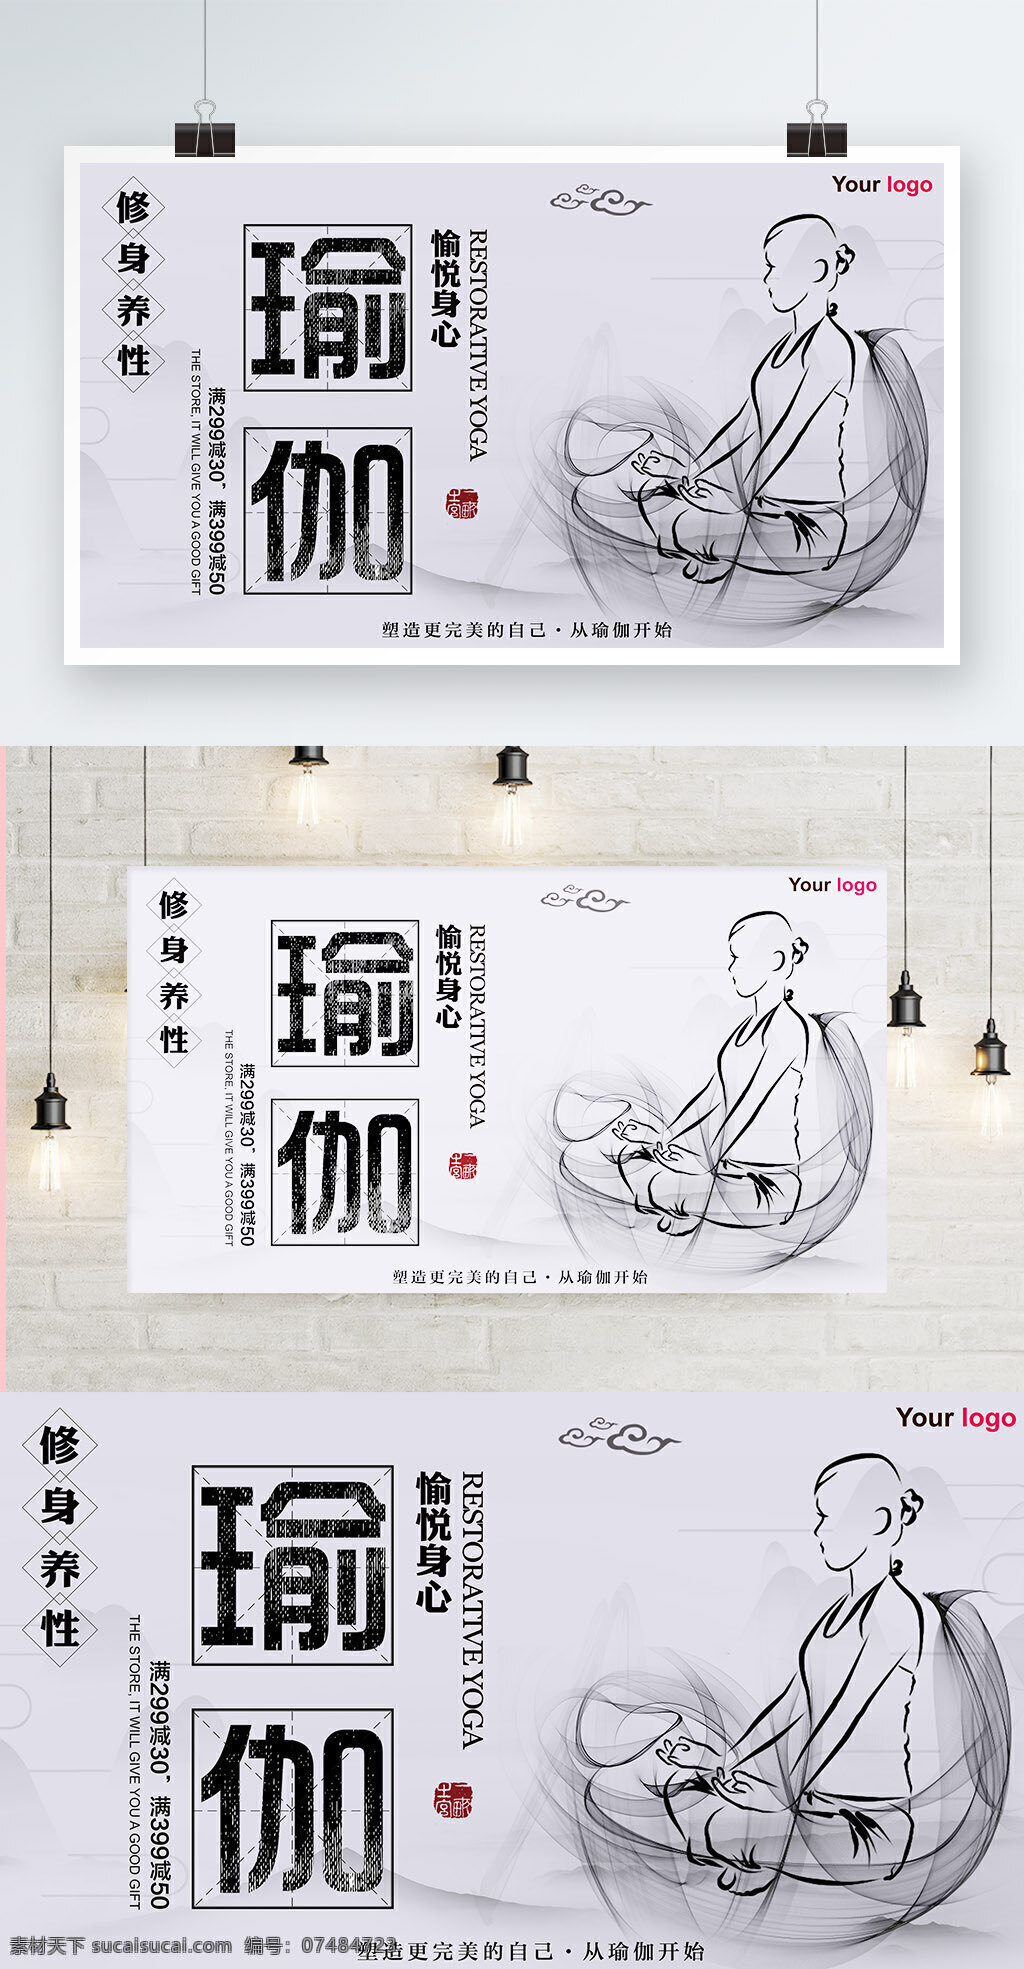 白色 背景 简约 中国 风 瑜伽 运动 宣传海报 体育 健身 中国风 健身房 养生 促销